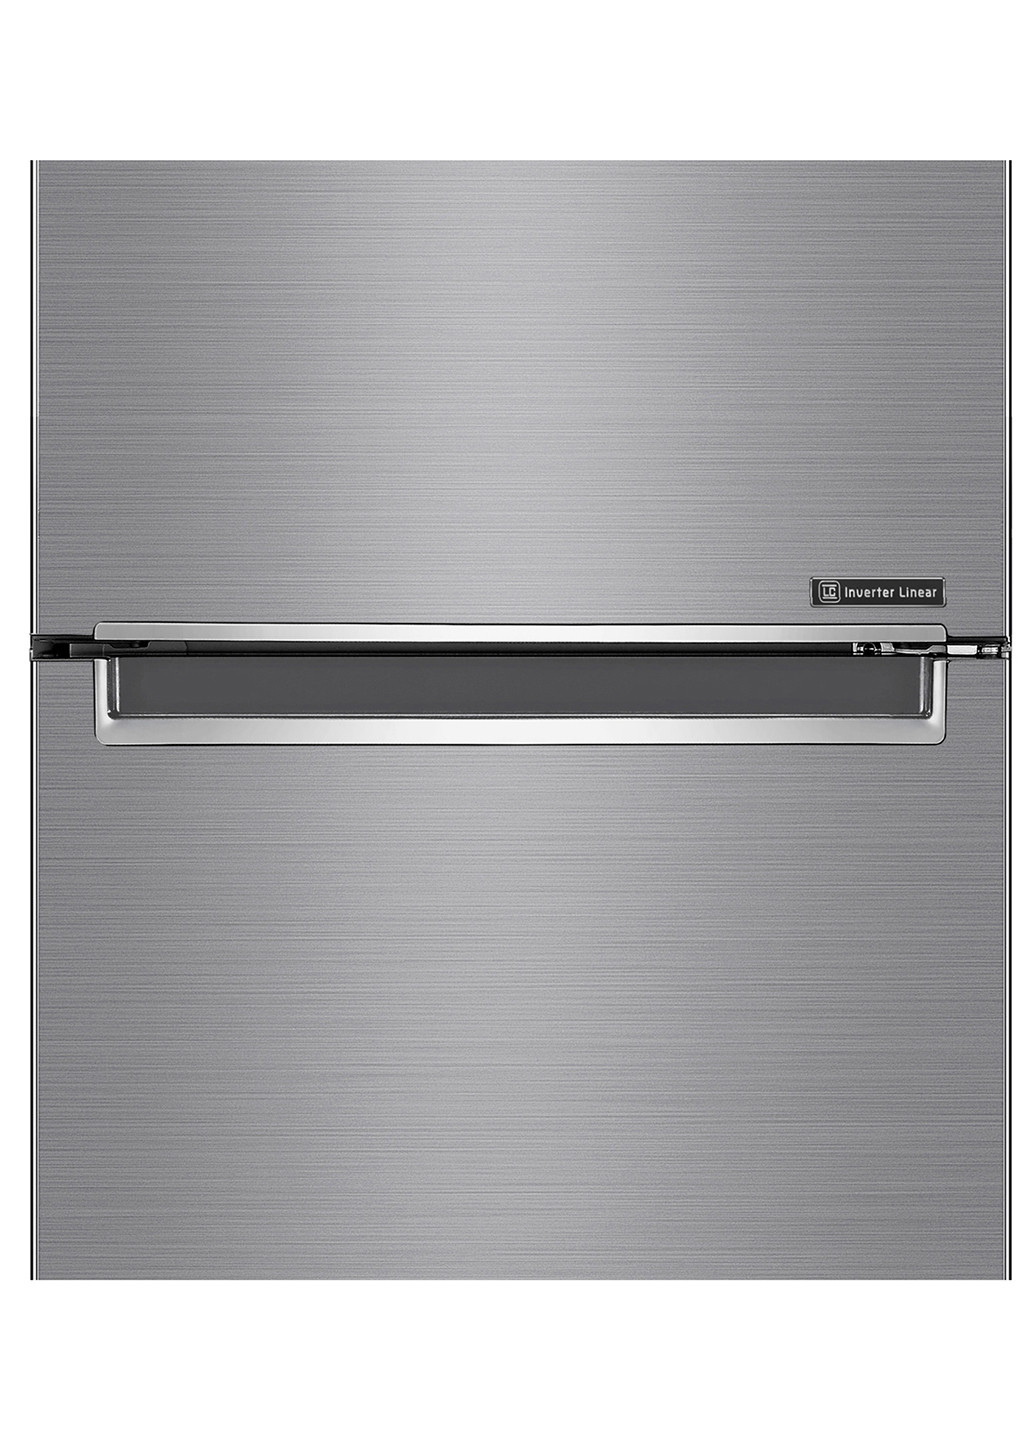 Холодильник LG gw-b509smdz (154677297)